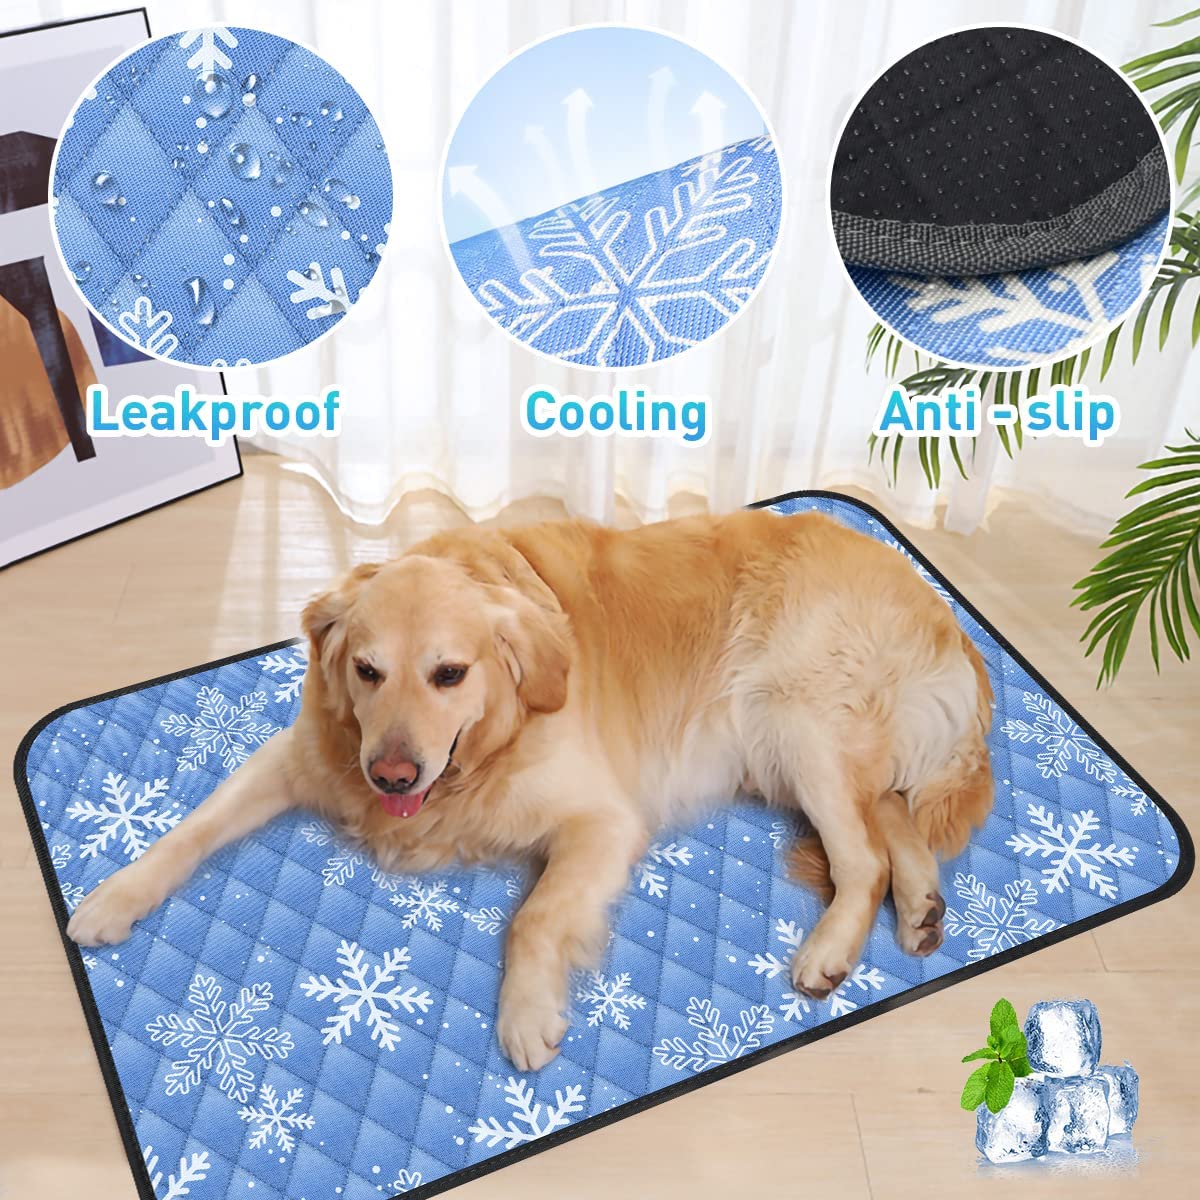 Cooling Pet Mat For summer - Moebypet 